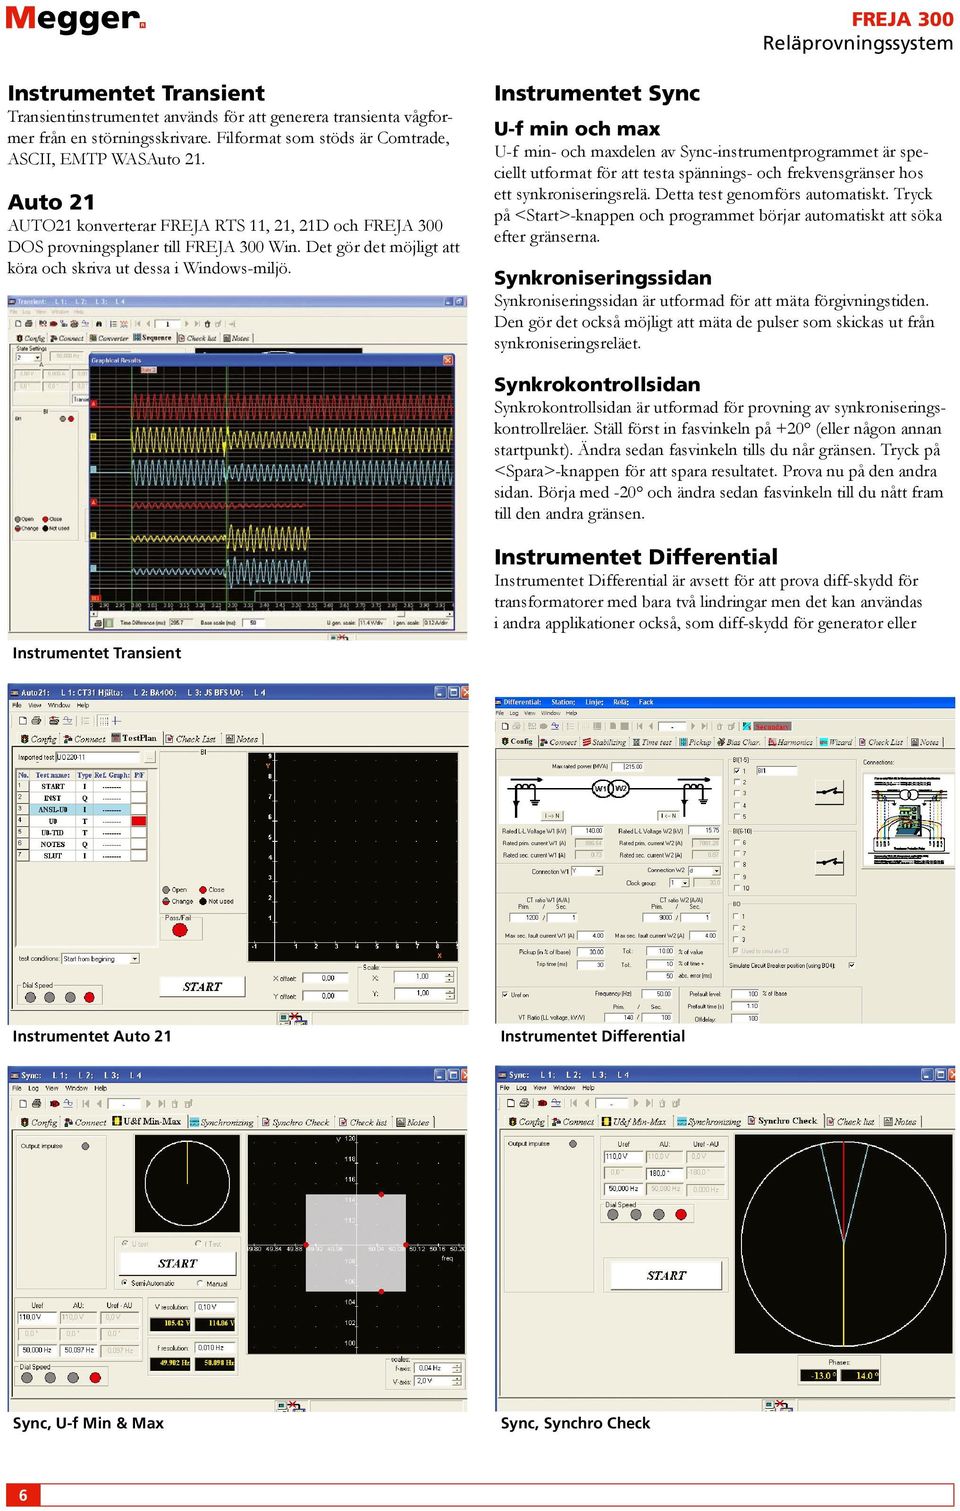 Instrumentet Sync U-f min och max U-f min- och maxdelen av Sync-instrumentprogrammet är speciellt utformat för att testa spännings- och frekvensgränser hos ett synkroniseringsrelä.